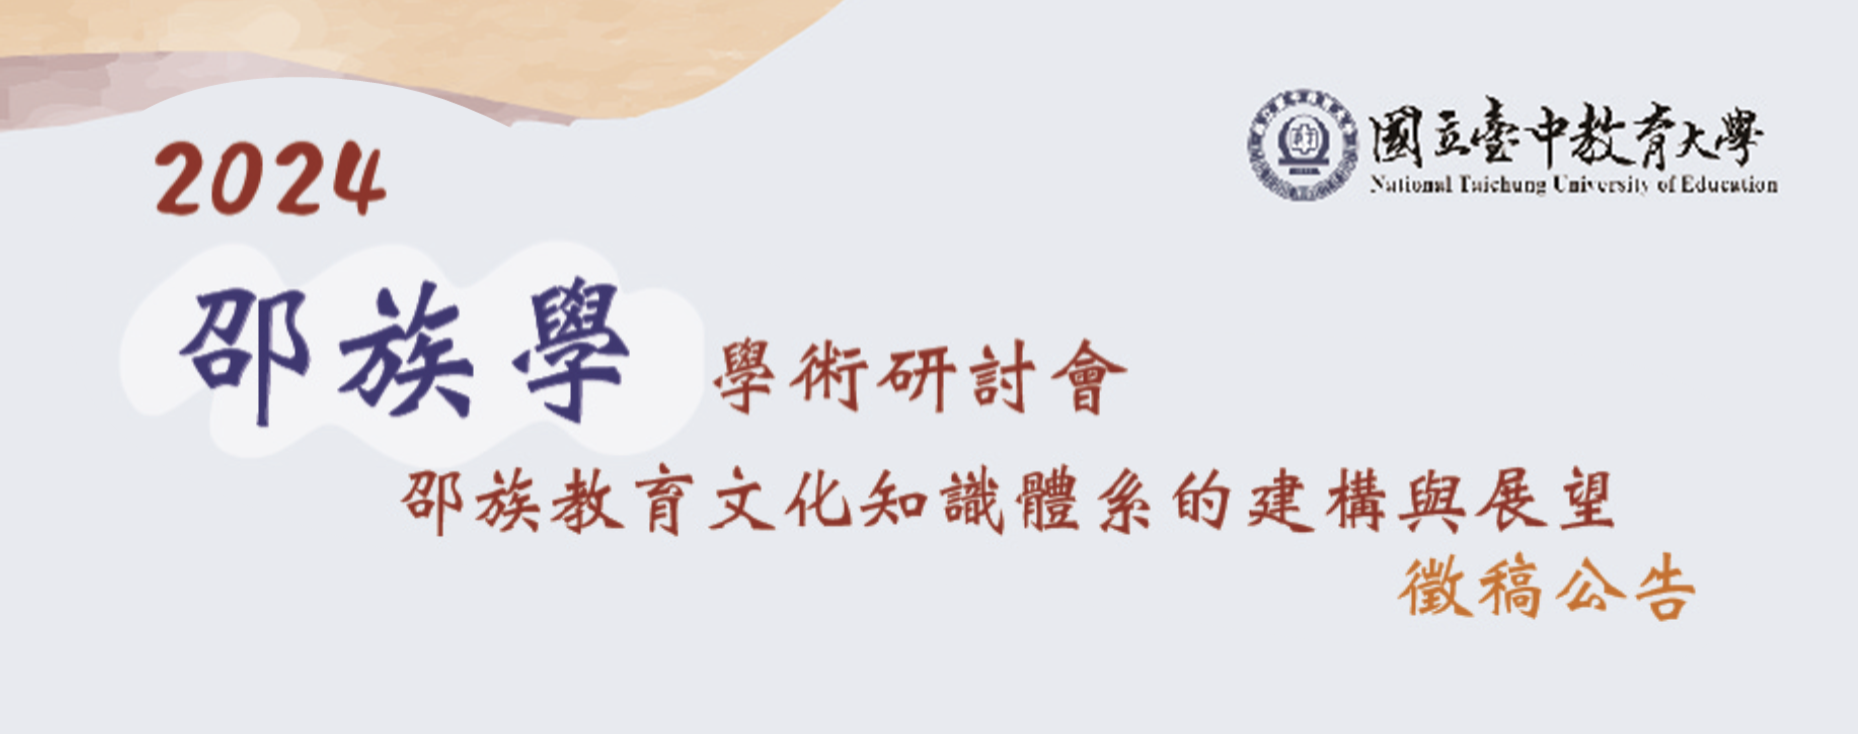 2024邵族學學術研討會：邵族教育文化知識體系的建構與展望徵稿公告